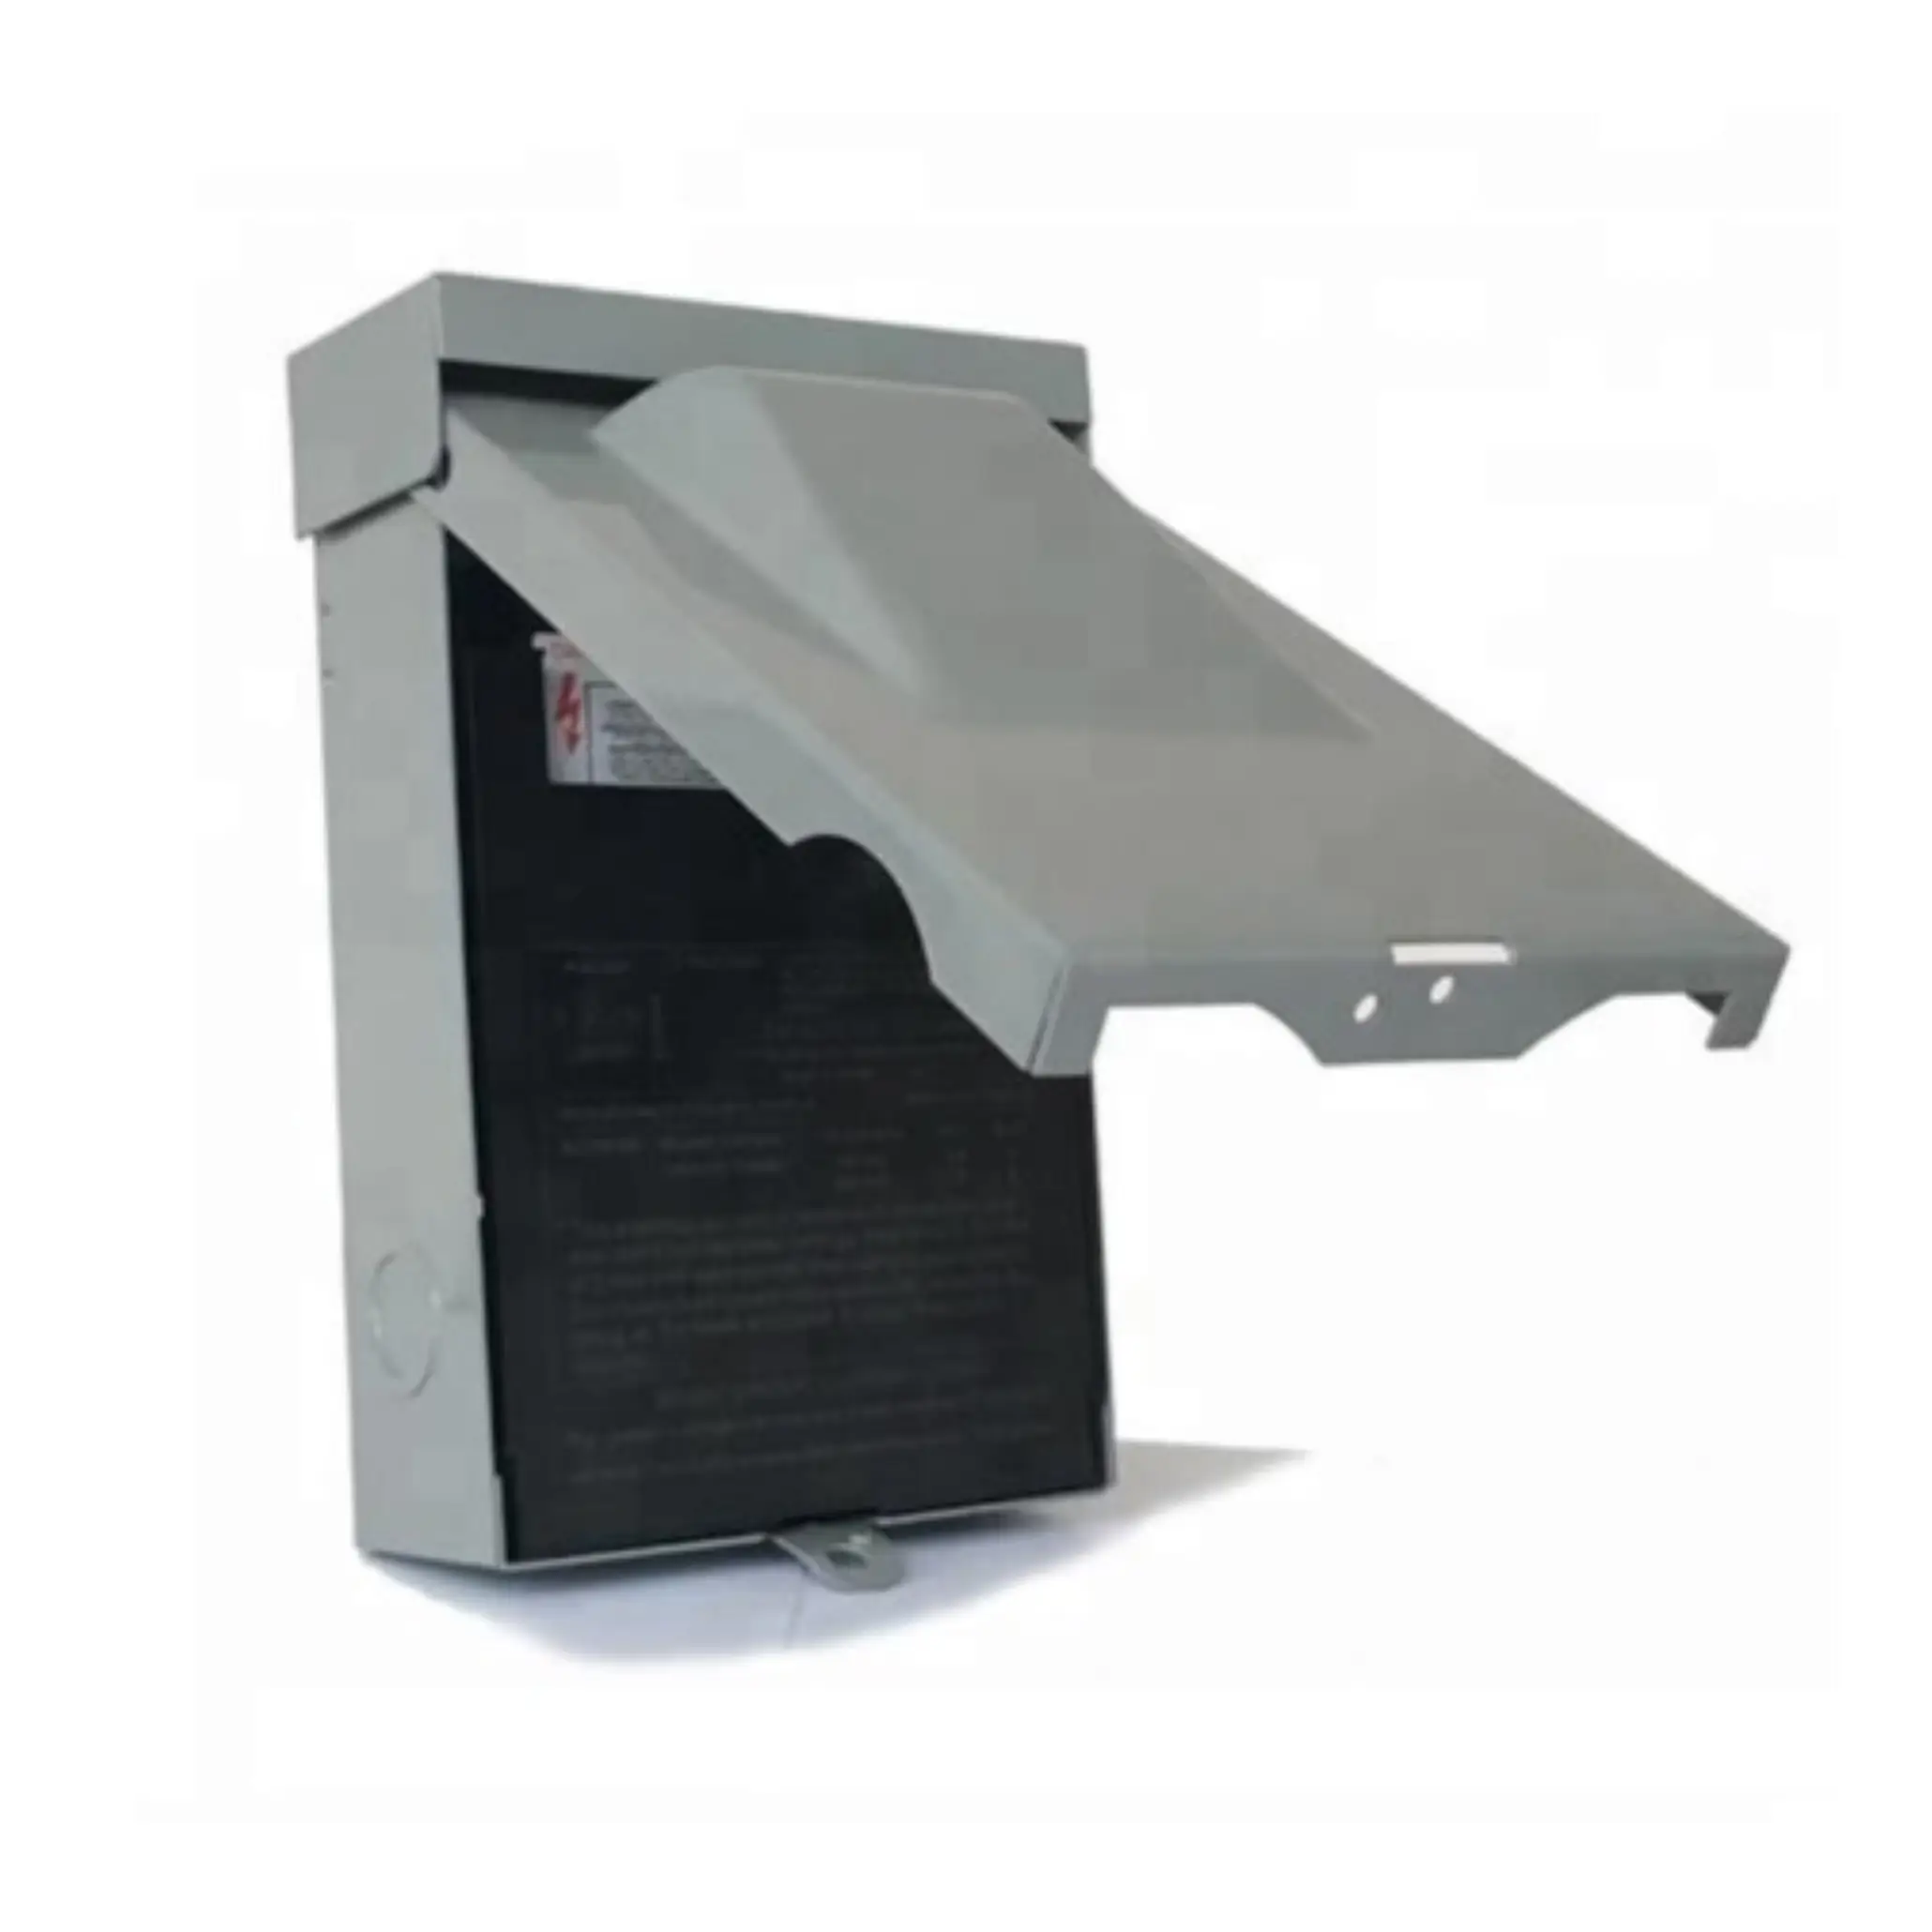 주거 및 조명 상업용 공기 조건을 위한 60 암페어 AC 연결 해제 박스 AC 단로기 안전 분리 스위치